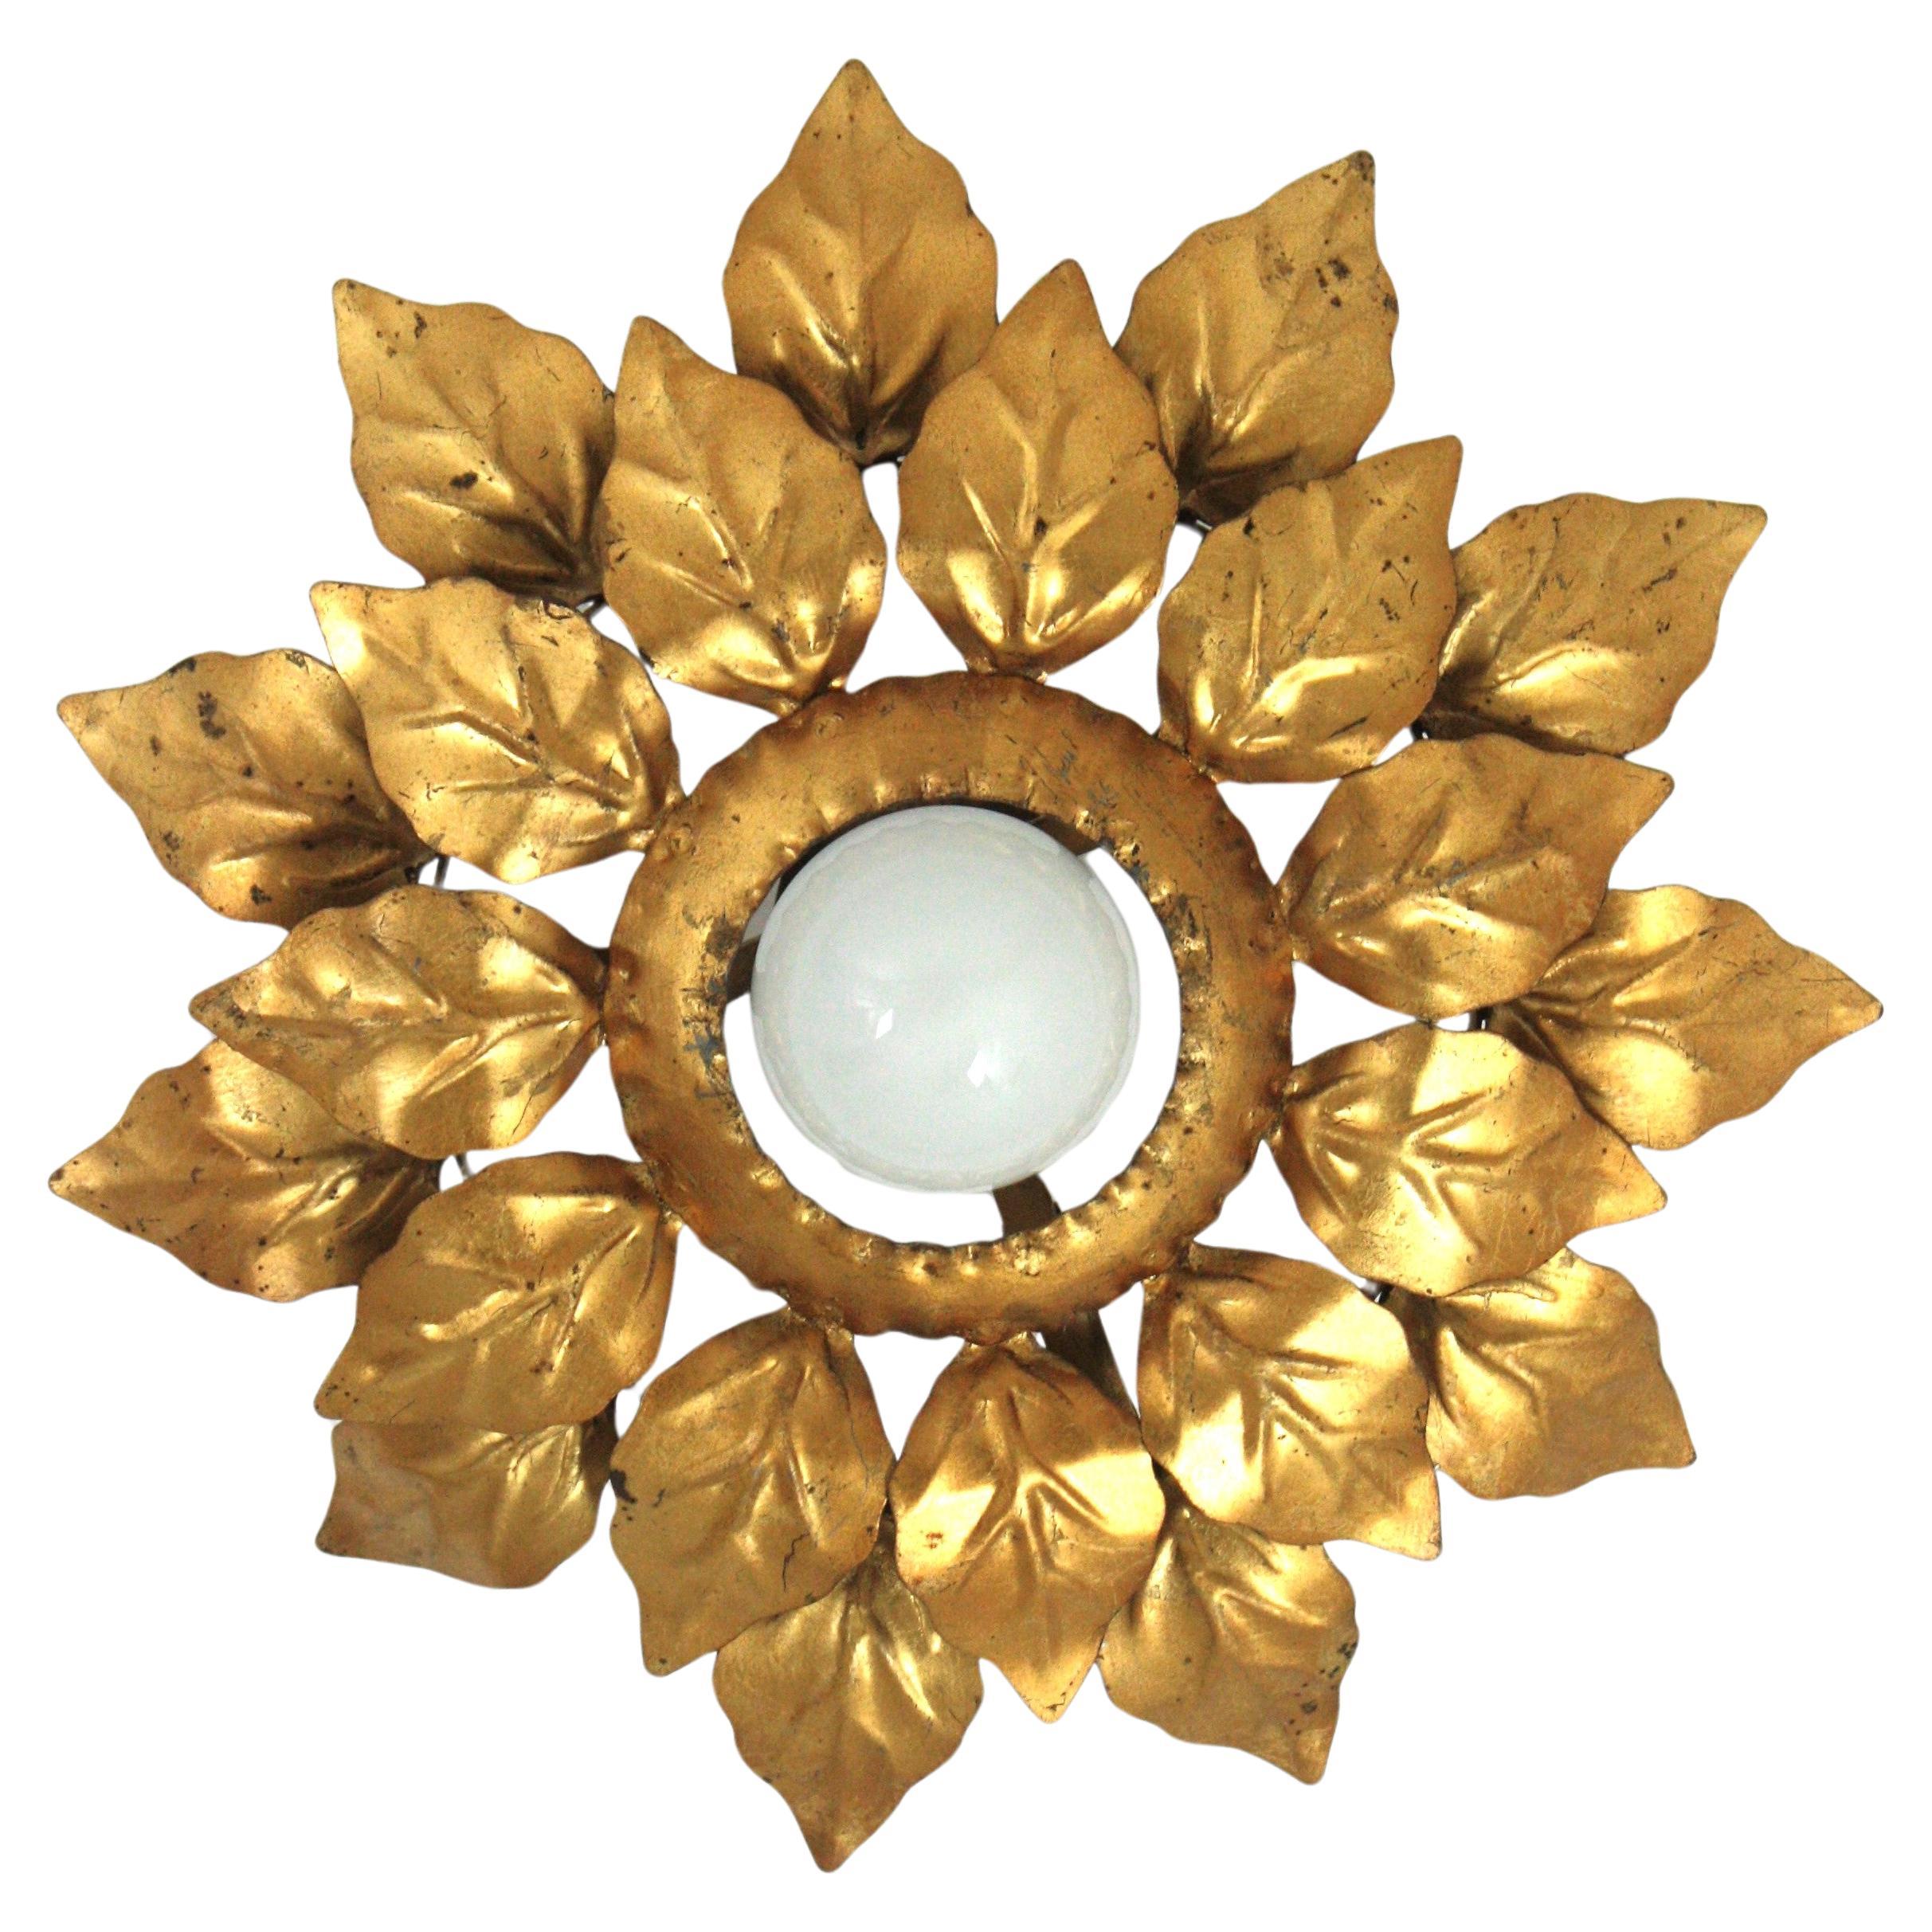 Lightsight espagnol en forme de soleil avec cadre à deux feuilles, fer doré